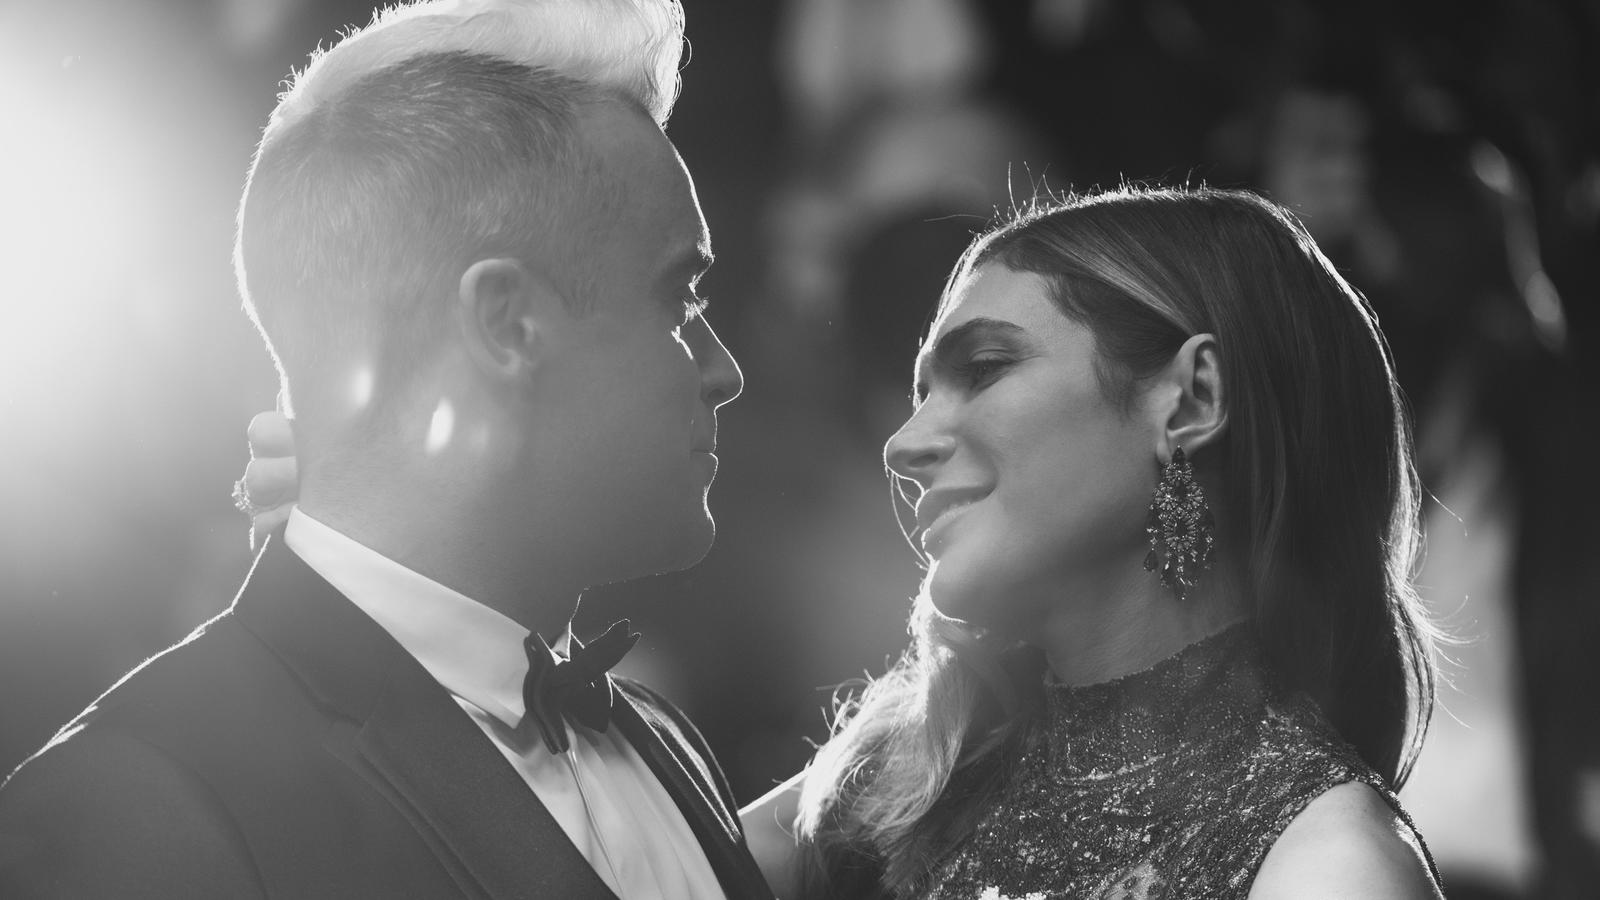 Robbie Williams: Seinee Frau Ayda Field enthüllt, dass ihre Mutter an Parkinson leidet.